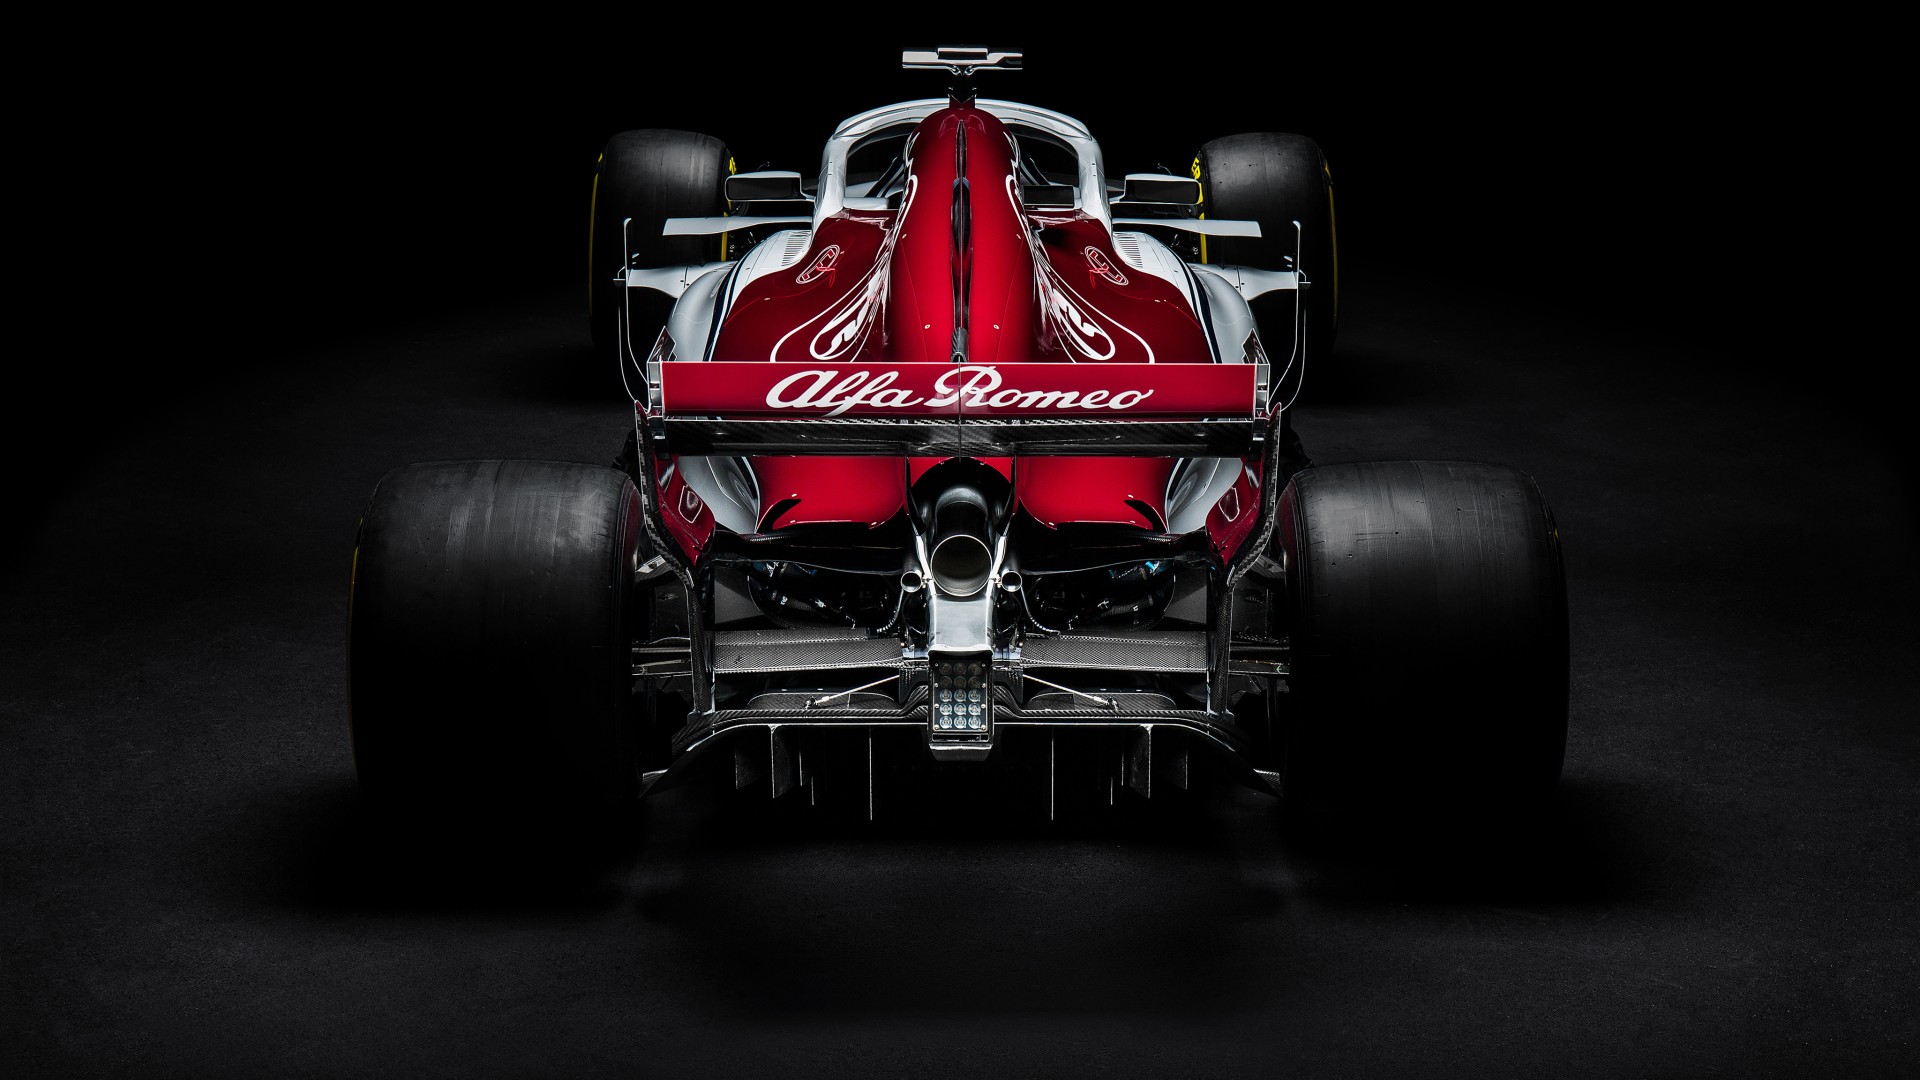 2018 Sauber C37 F1 Formula 1 Car 4K Wallpaper | HD Car ...